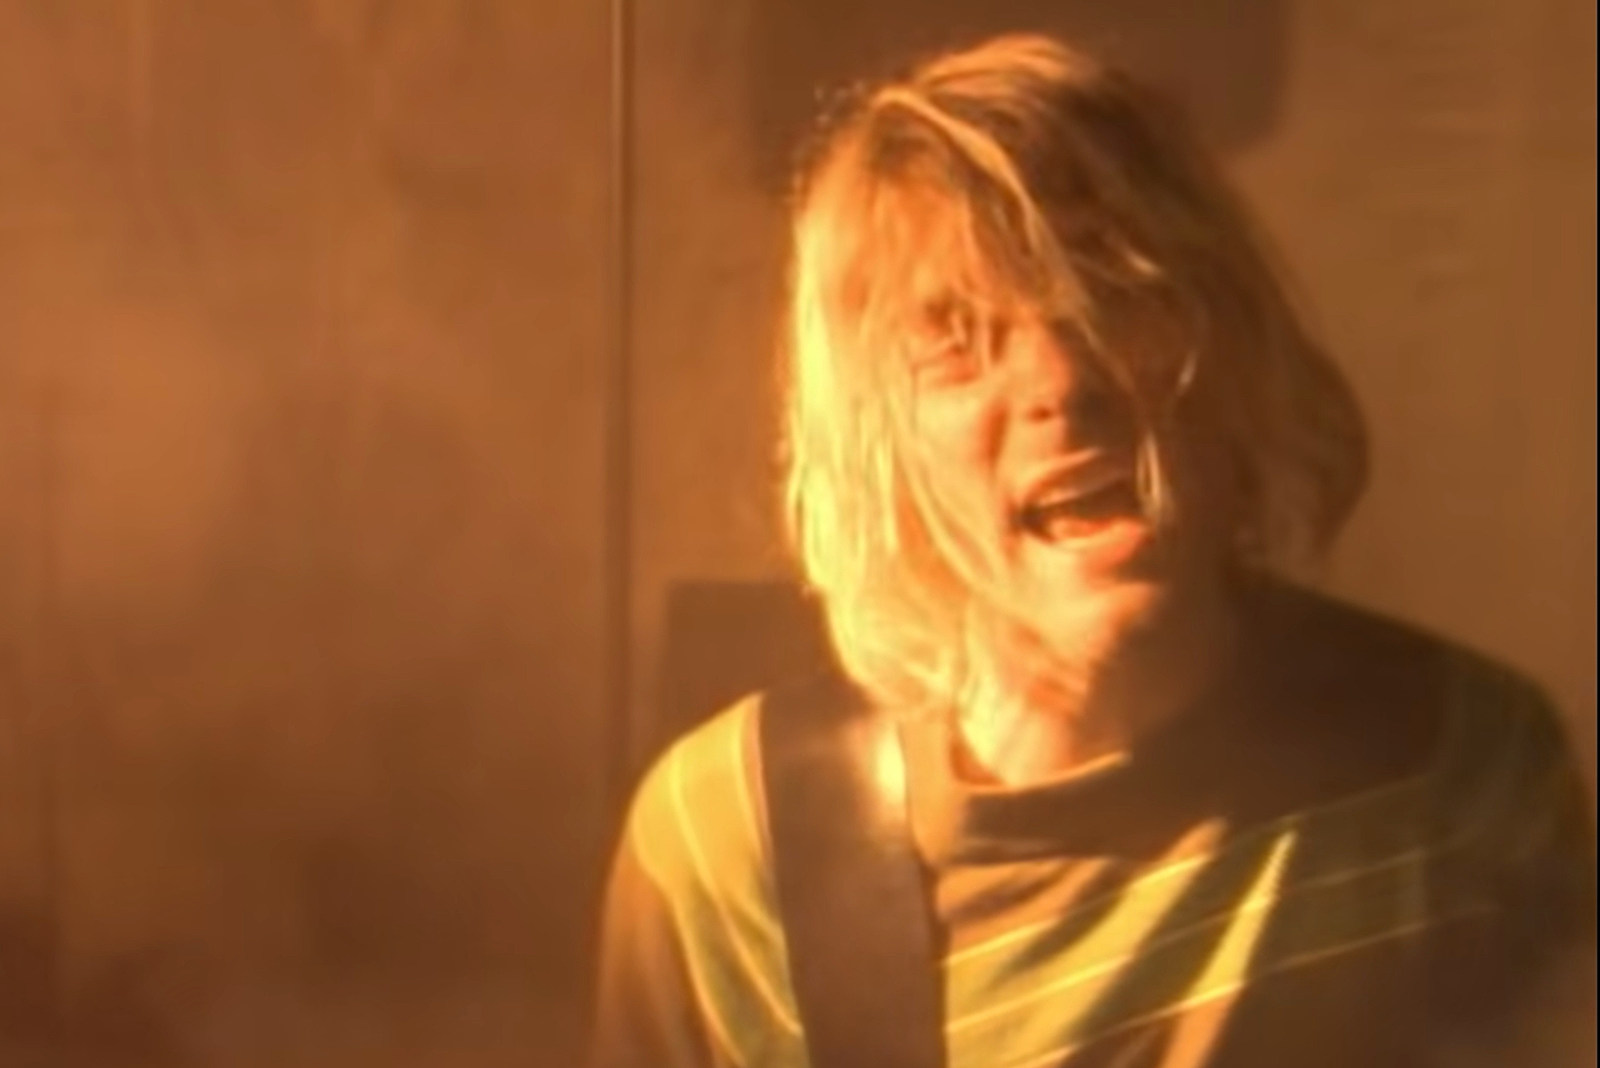 The Day Nirvana Filmed the 'Smells Like Teen Spirit' Video